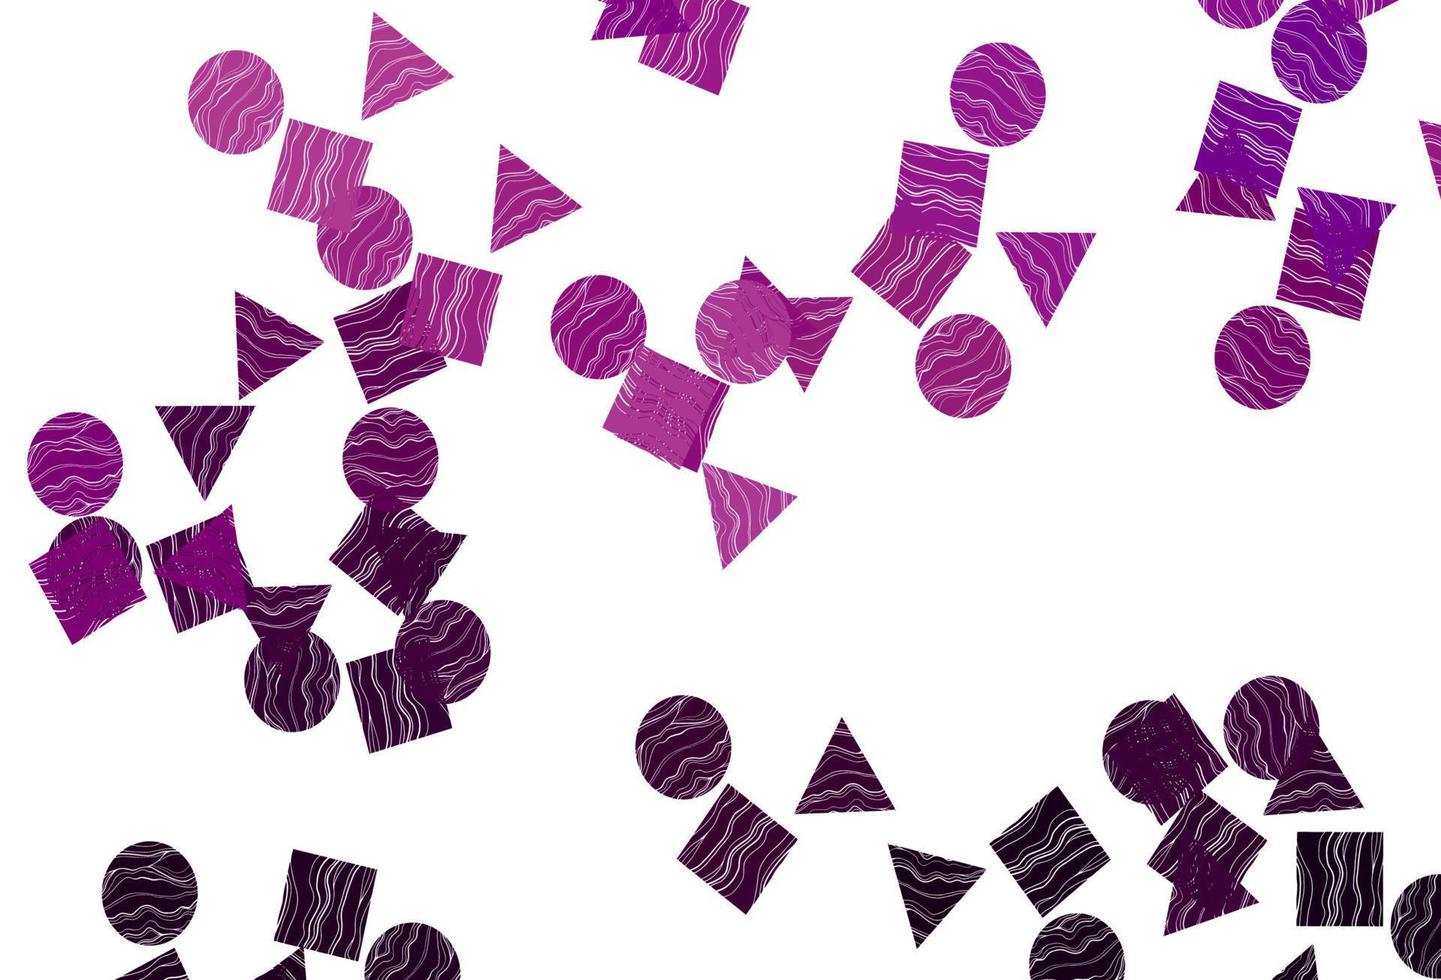 Fondo de vector púrpura claro con triángulos, círculos, cubos.